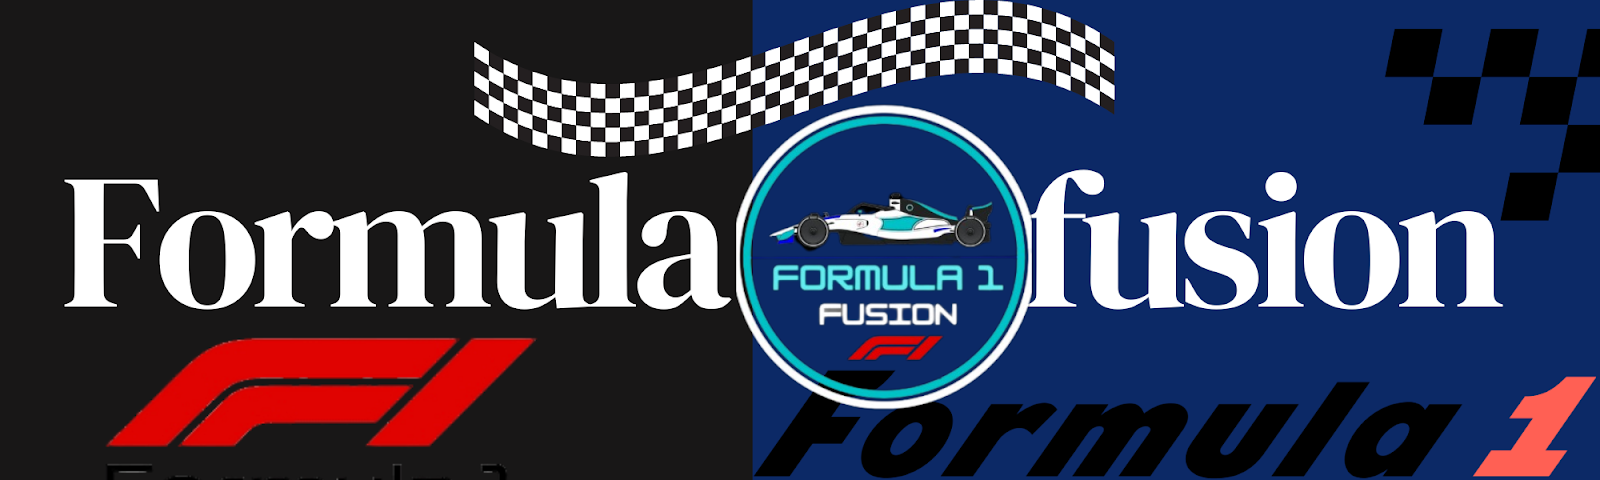 Formula 1 Fusion